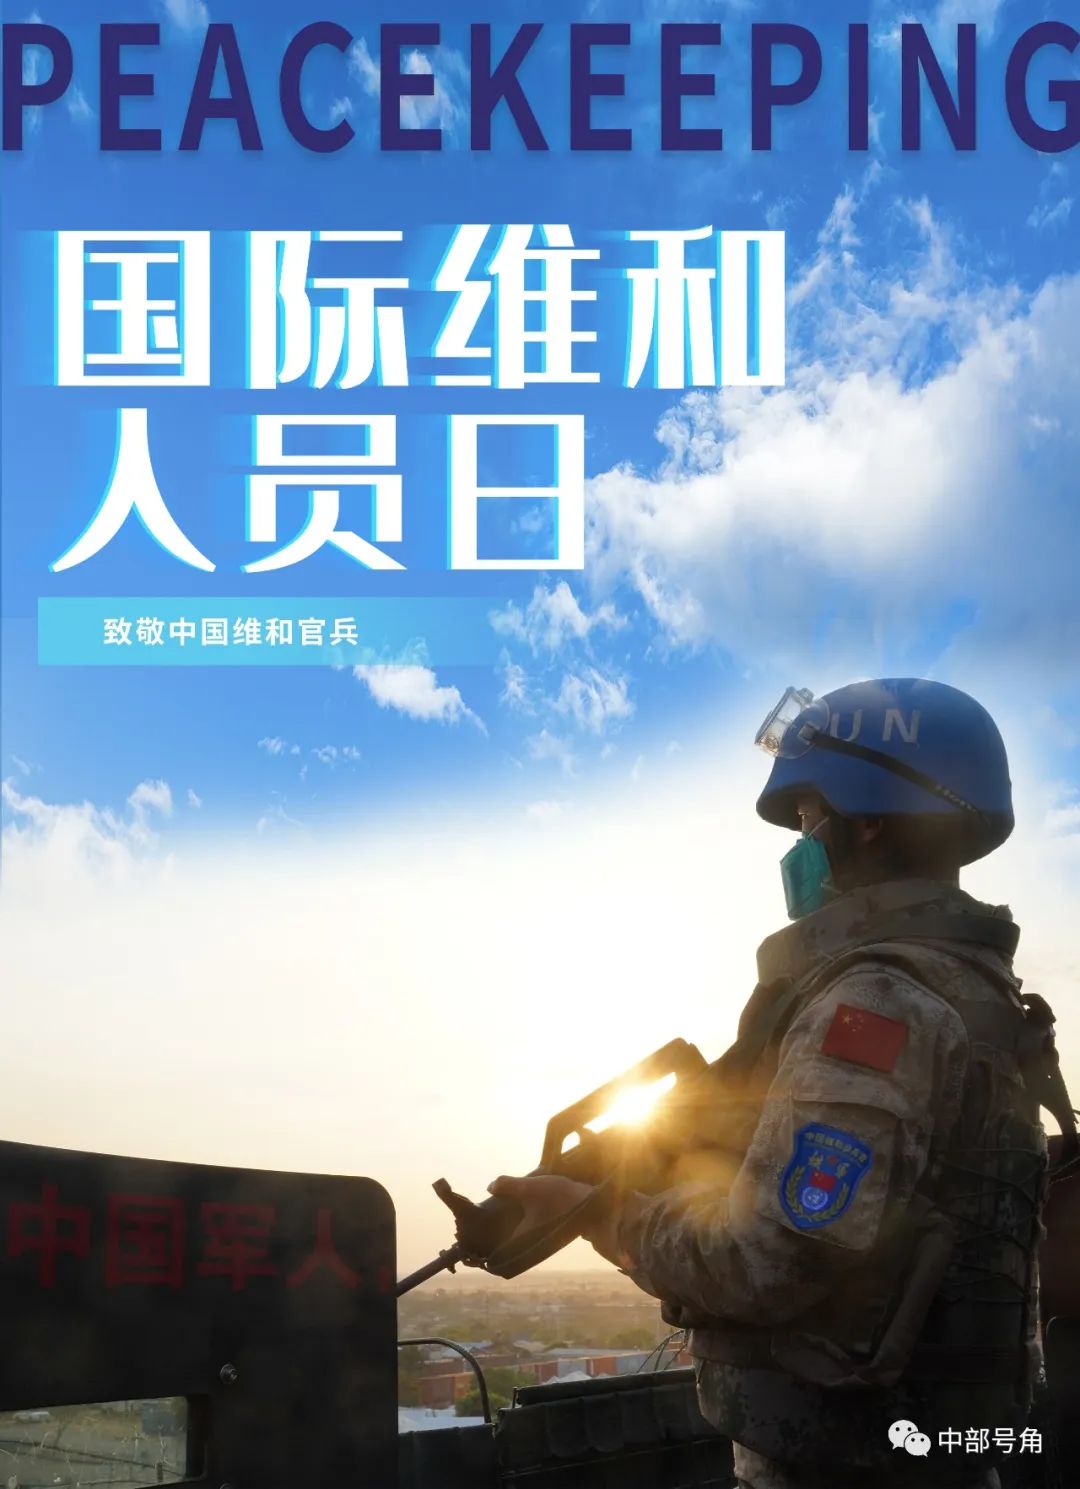 中国维和部队标志图片图片